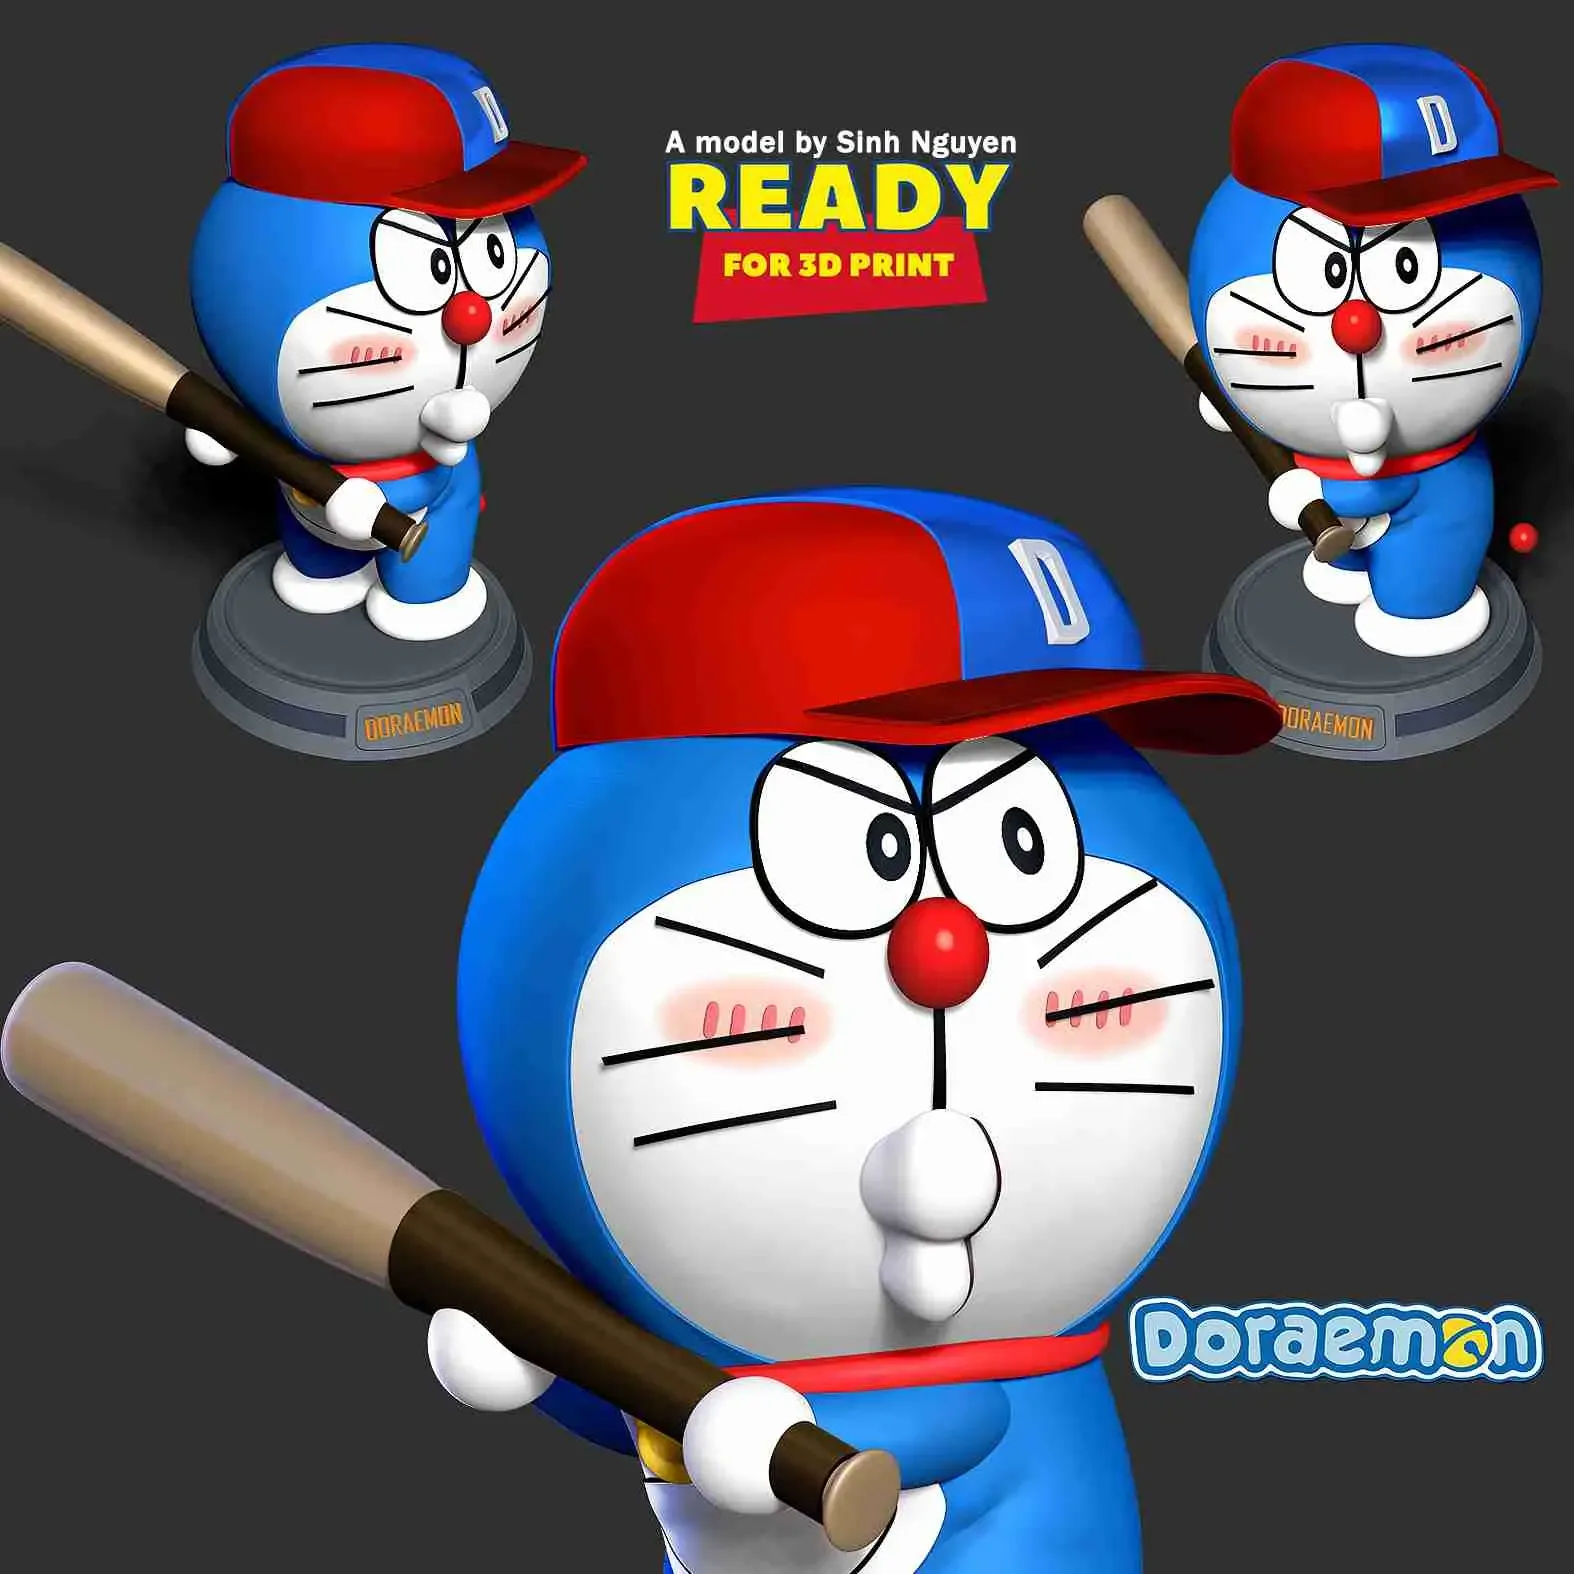 Doraemon - baseball player